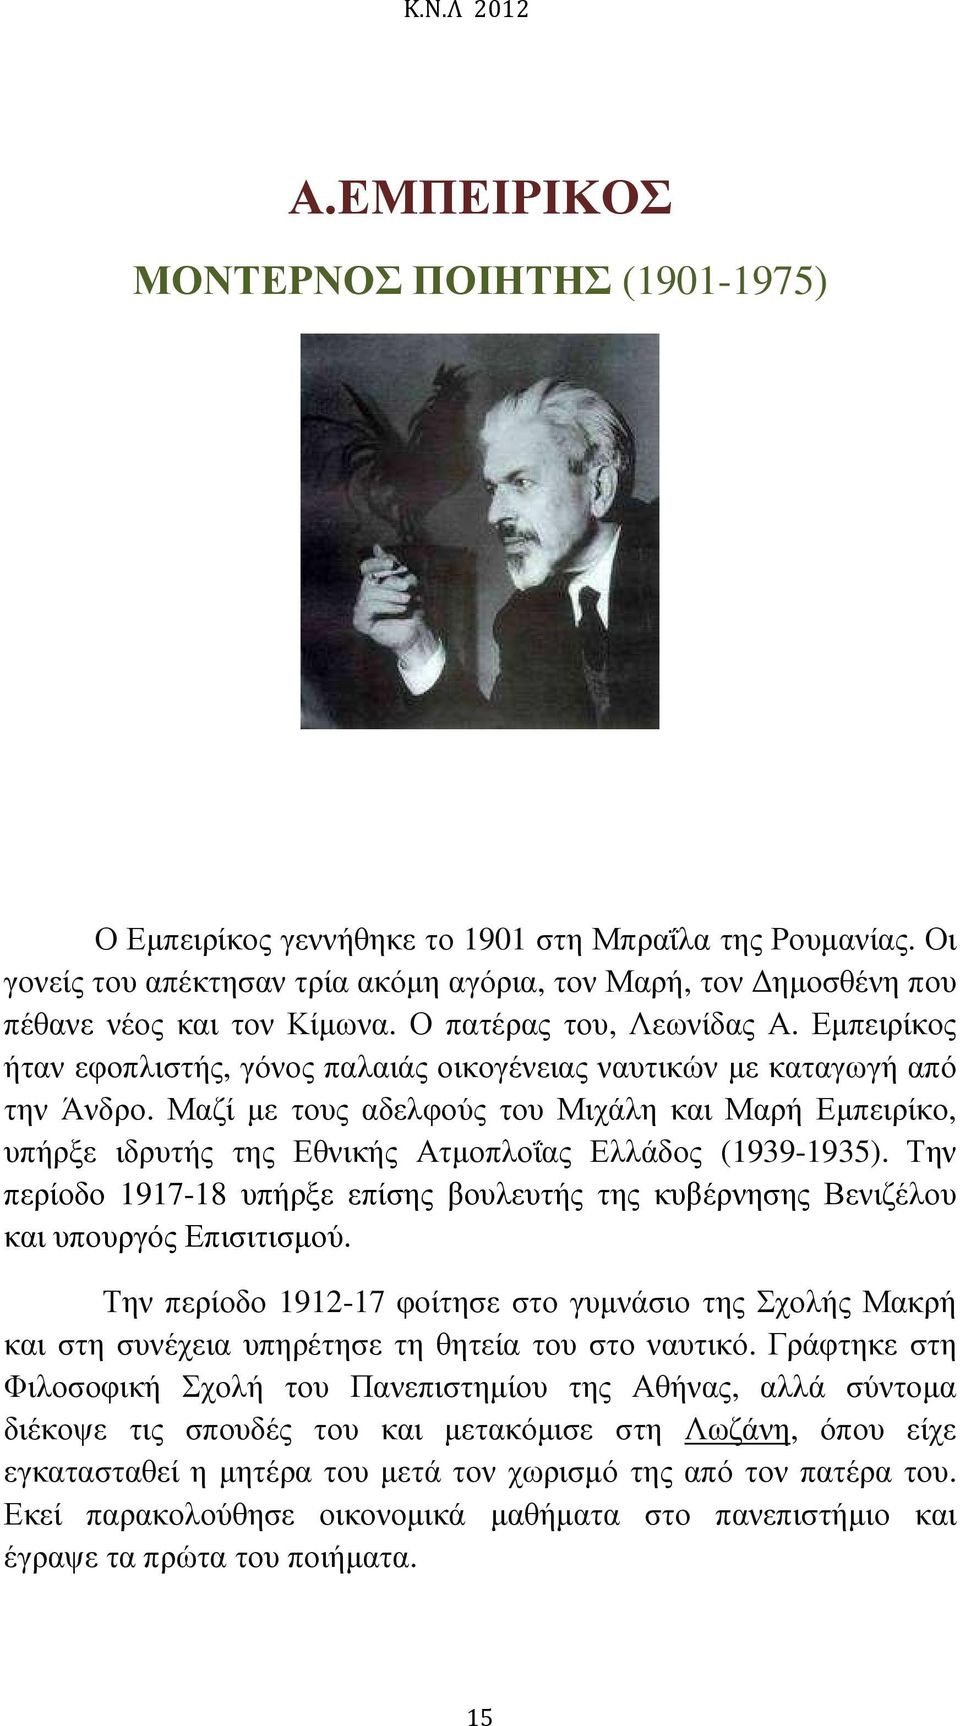 Μαζί µε τους αδελφούς του Μιχάλη και Μαρή Εµπειρίκο, υπήρξε ιδρυτής της Εθνικής Ατµοπλοΐας Ελλάδος (1939-1935).